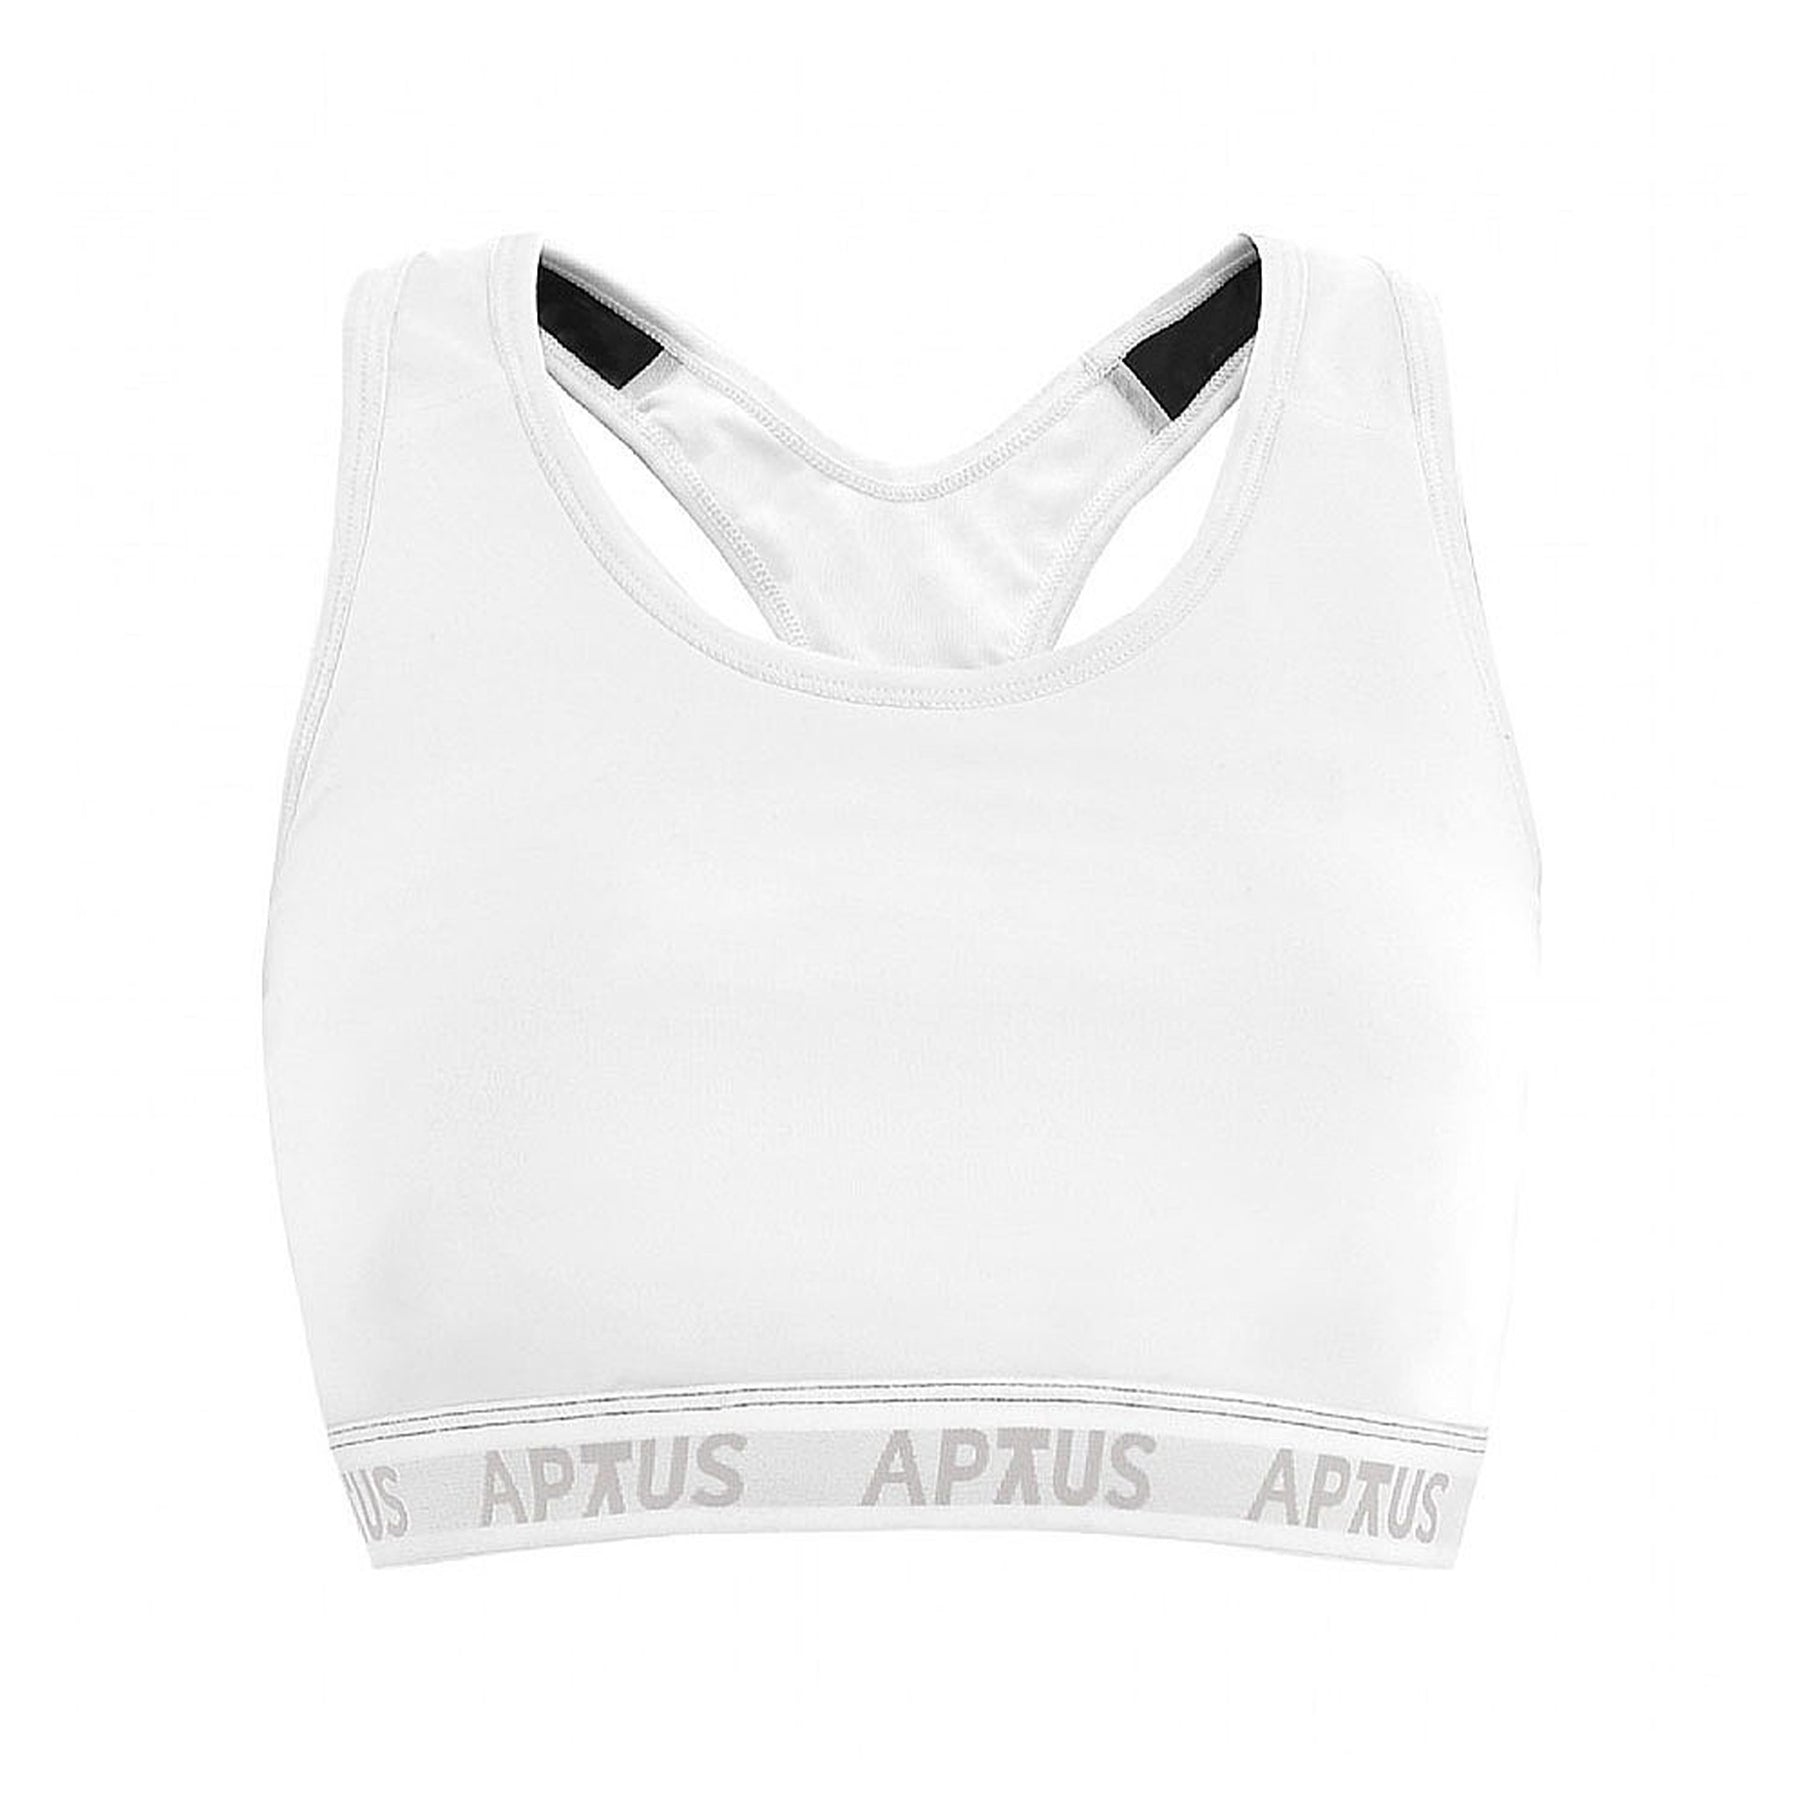 Aptus Eco Sports Bra: Black/White Reversible